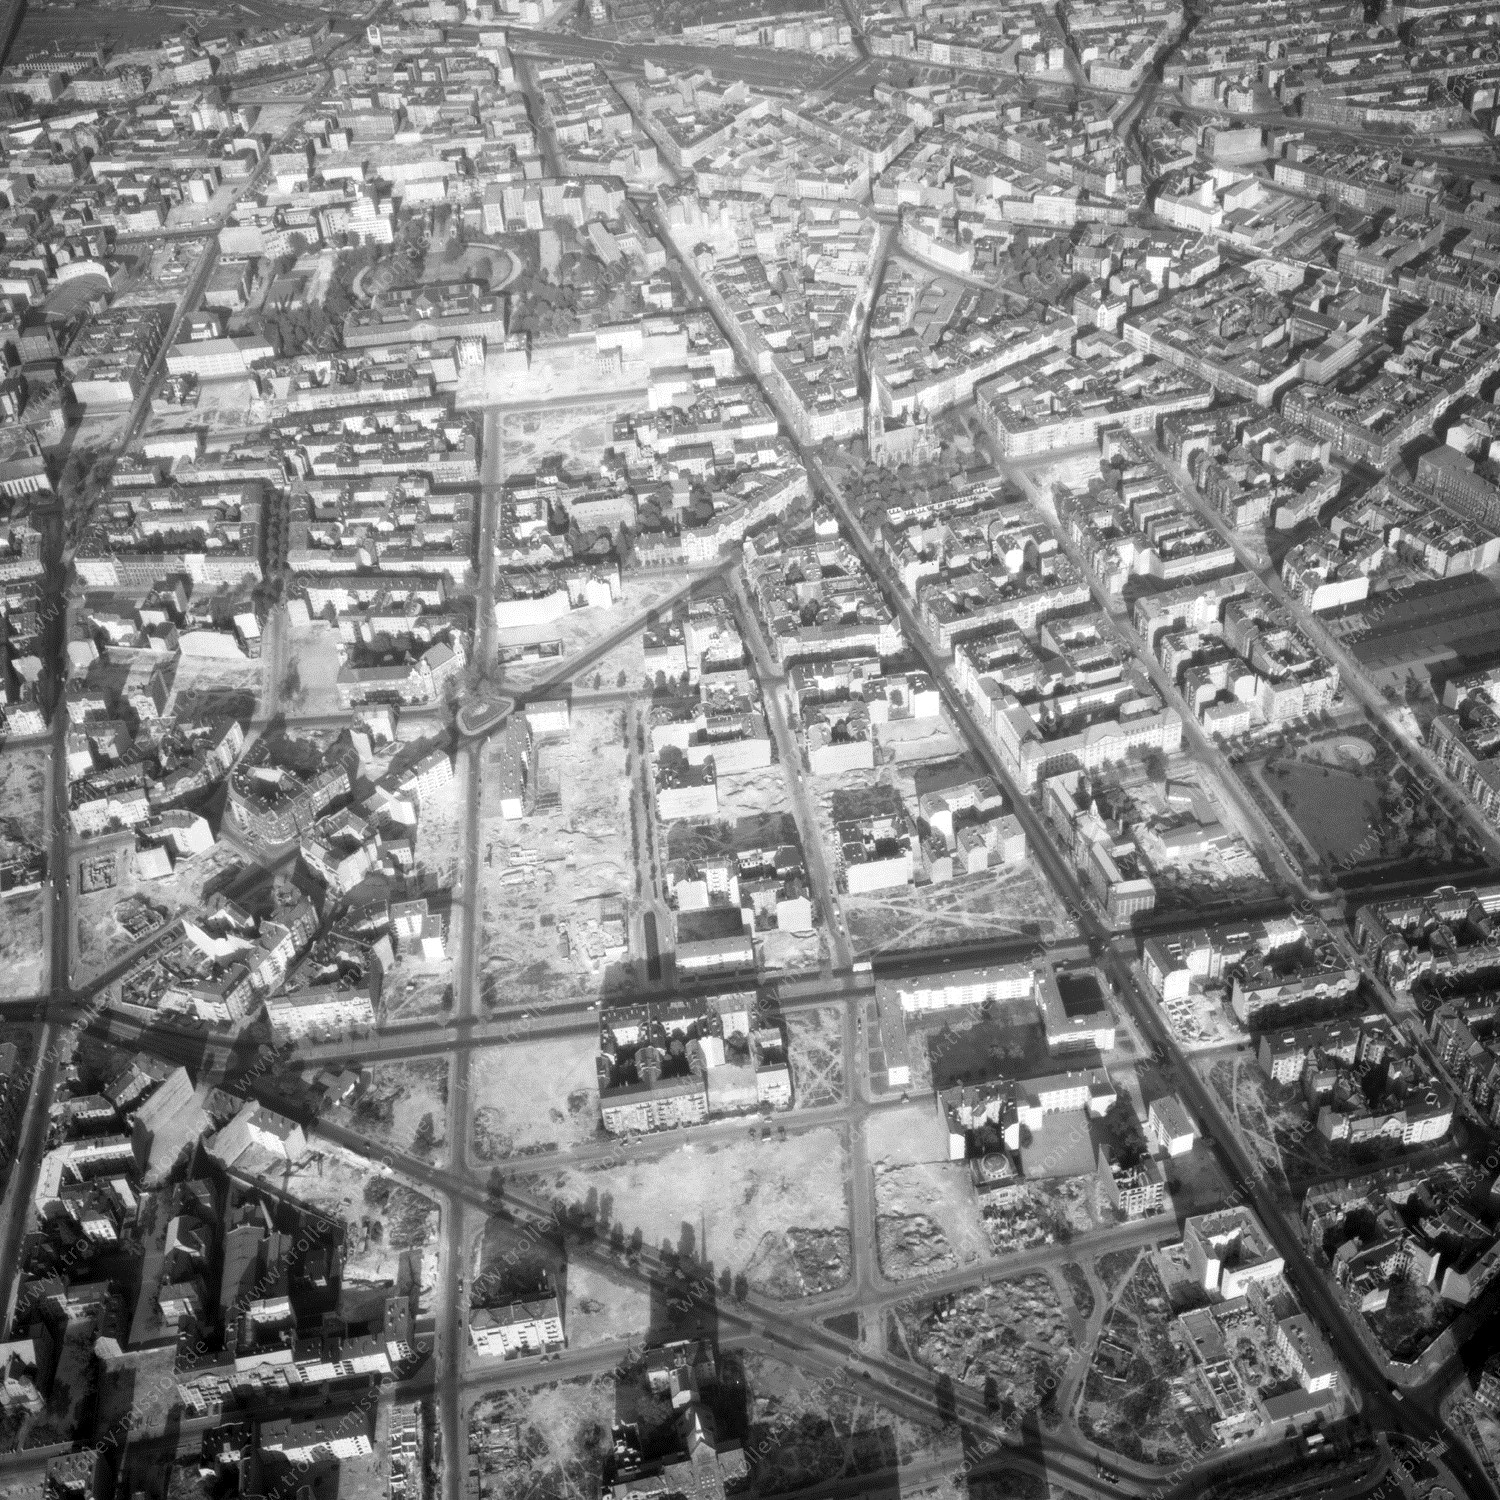 Alte Fotos und Luftbilder von Berlin - Luftbildaufnahme Nr. 04 - Historische Luftaufnahmen von West-Berlin aus dem Jahr 1954 - Flugstrecke Foxtrot